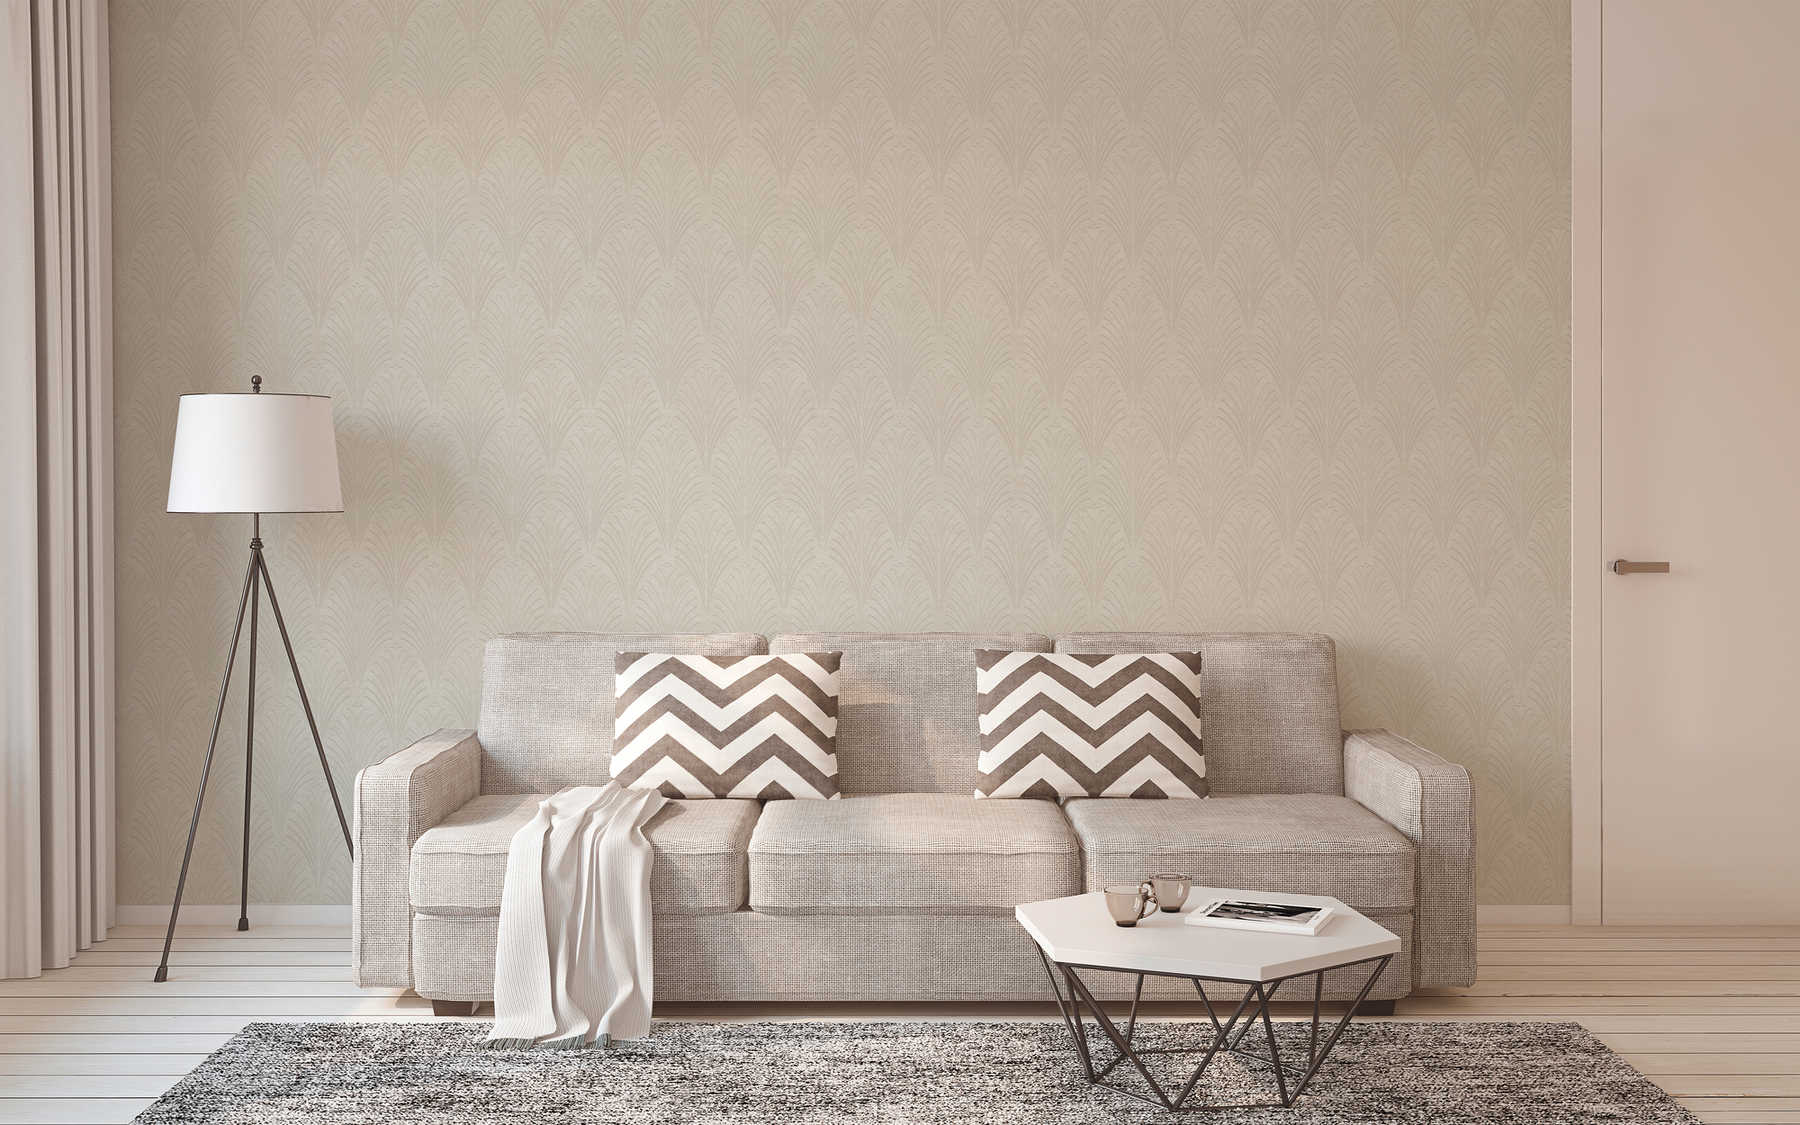             Retro-Tapete Art Deco Stil mit geometrischem Muster – Creme, Grau, Beige
        